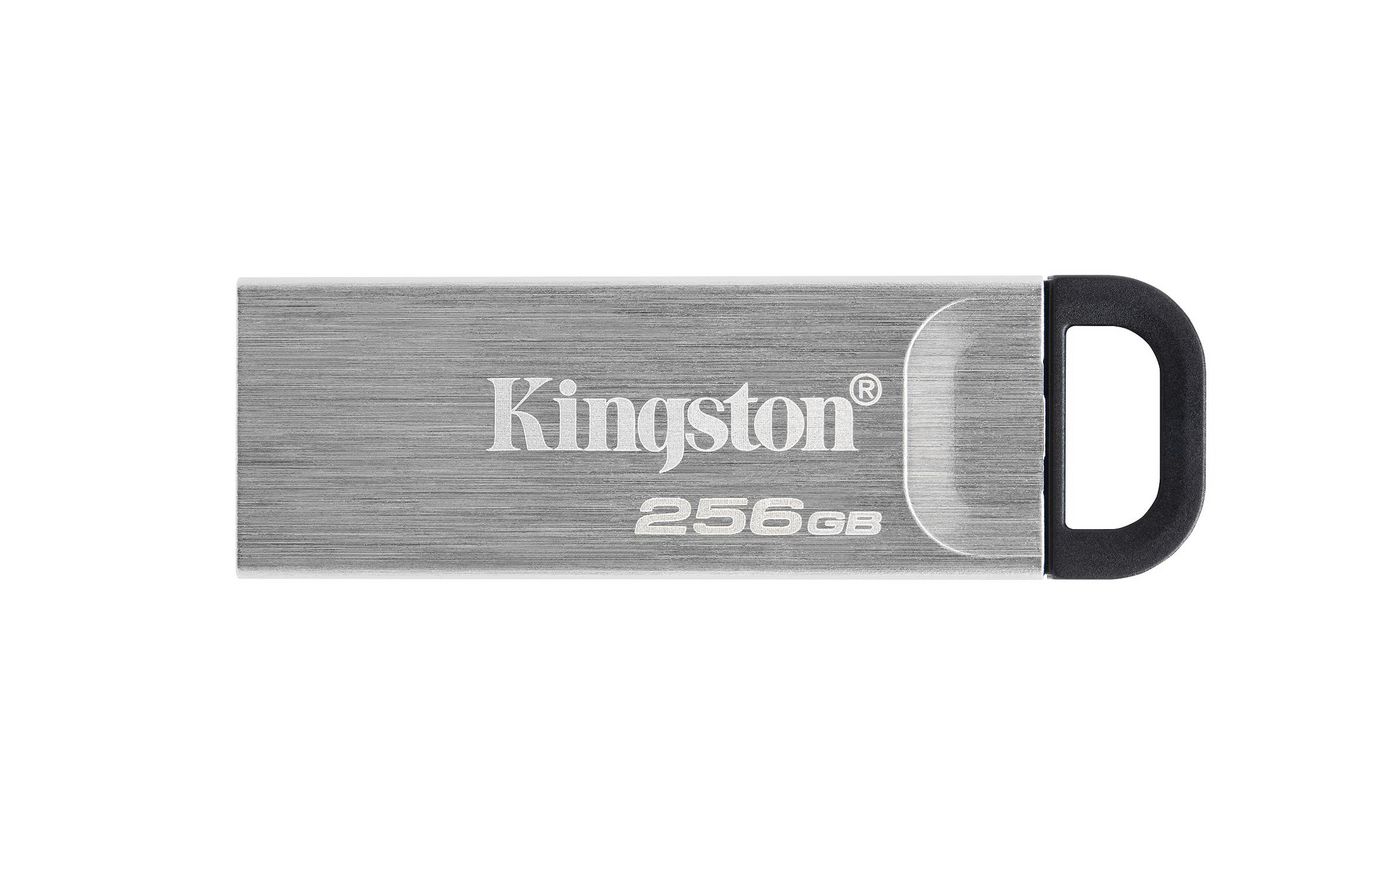 Kingston DTKN256GB W125900281 Technology DataTraveler Kyson 